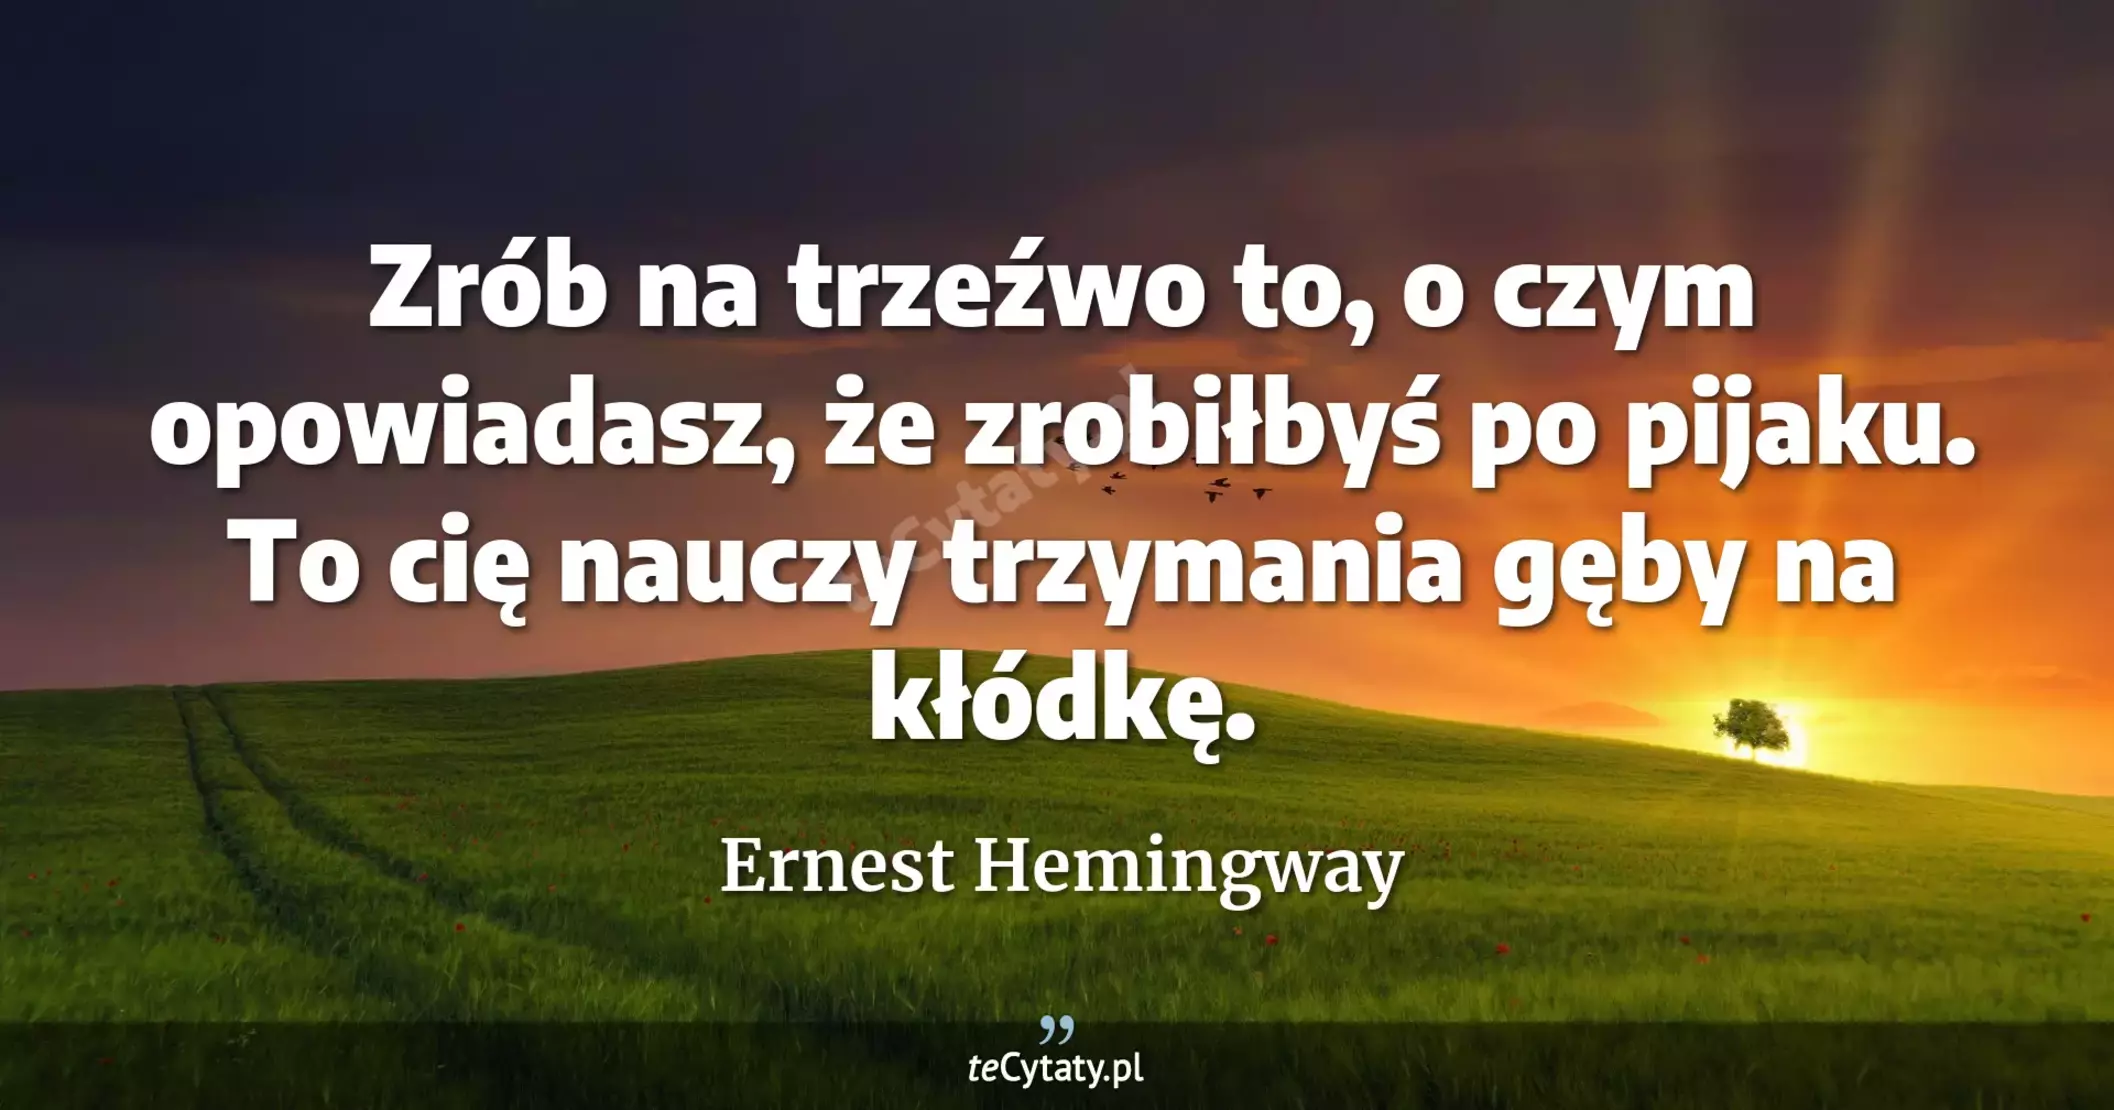 Zrób na trzeźwo to, o czym opowiadasz, że zrobiłbyś po pijaku. To cię nauczy trzymania gęby na kłódkę. - Ernest Hemingway